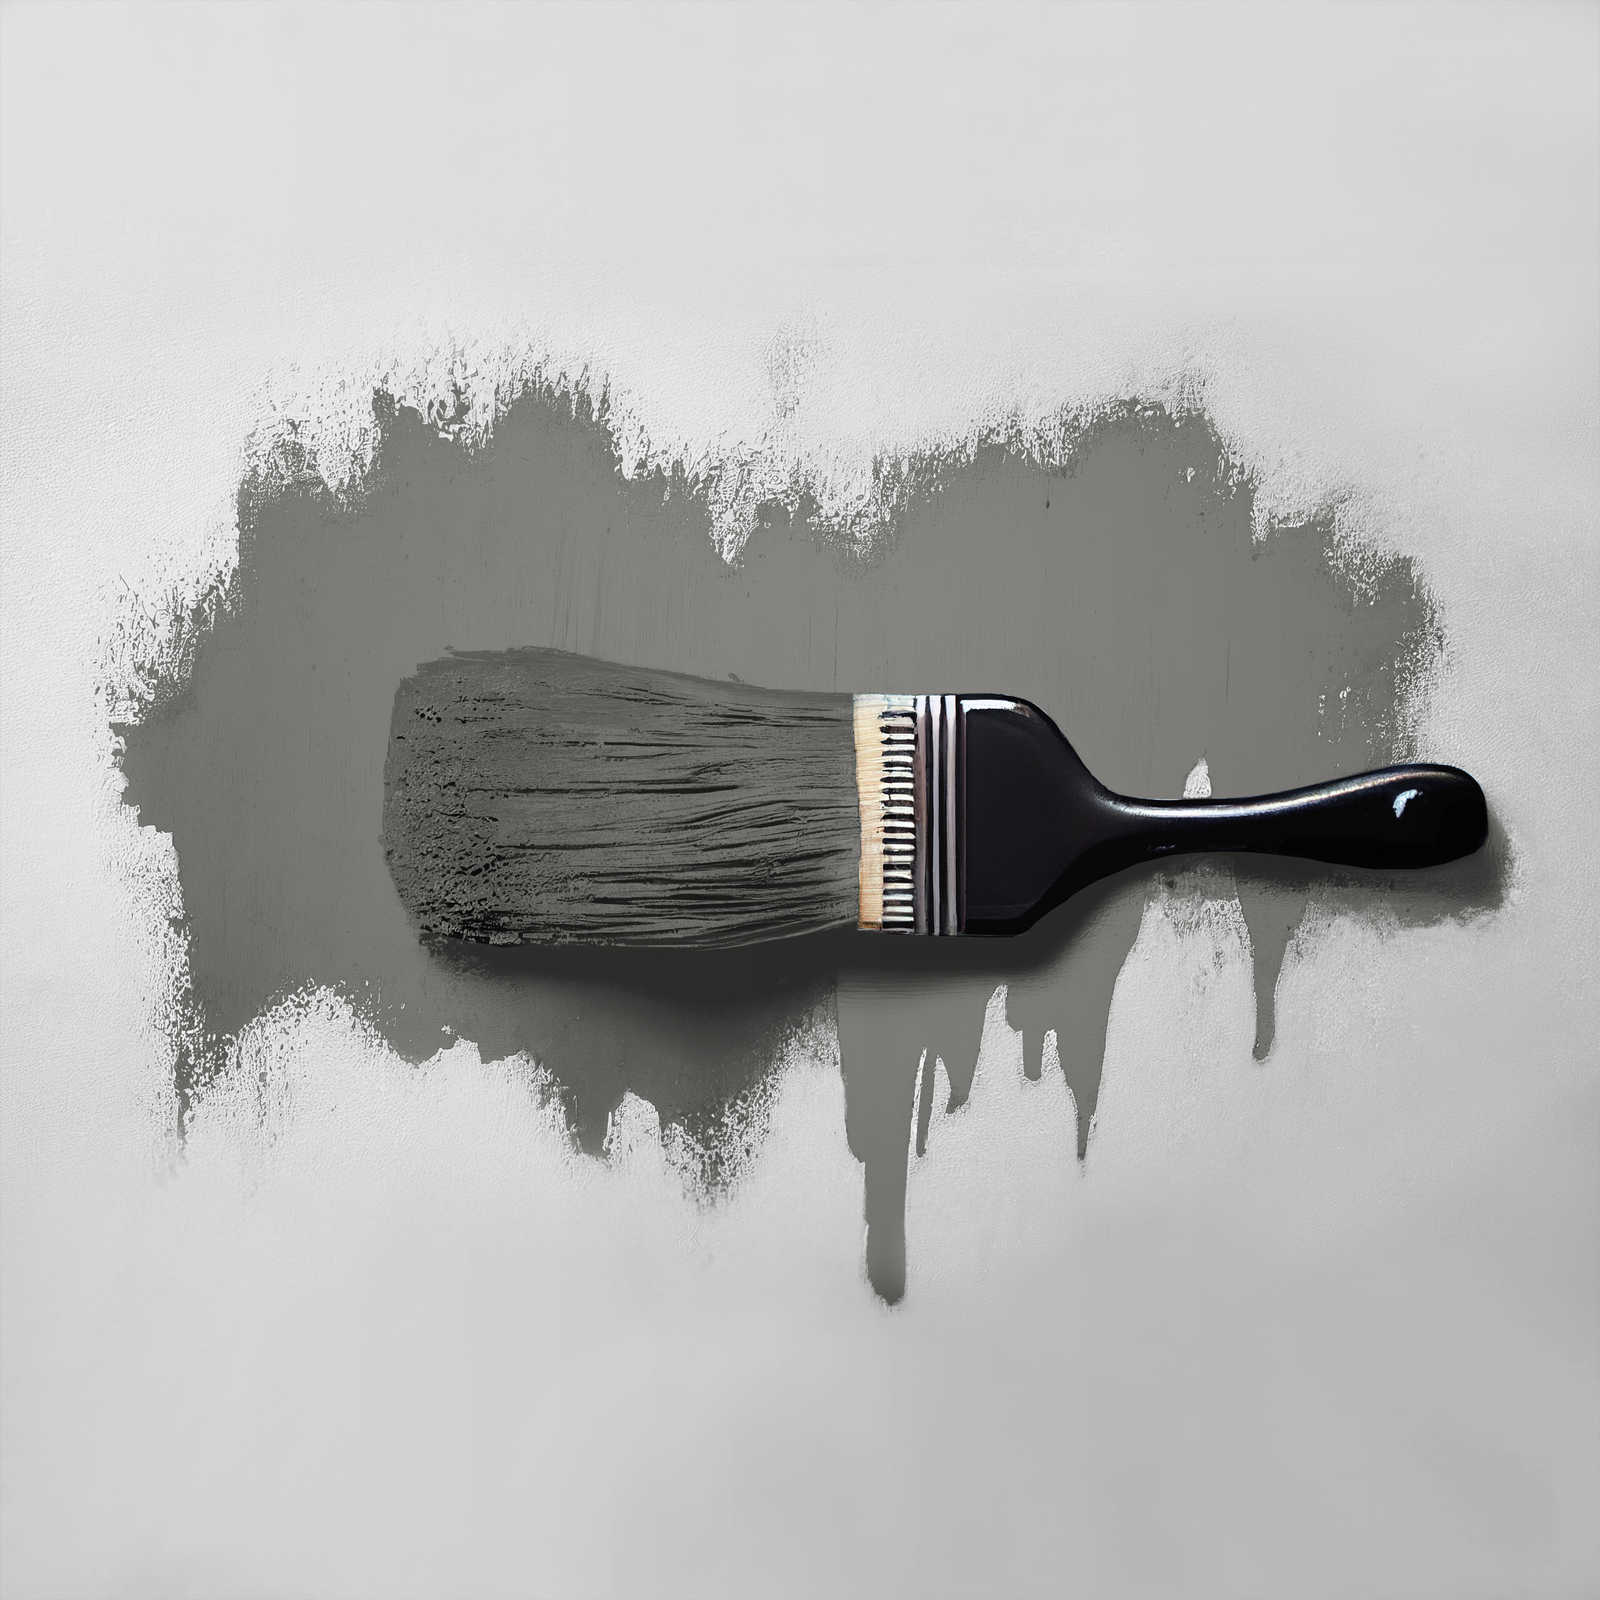             Peinture murale TCK1013 »Poised Pepper« en gris foncé – 2,5 litres
        